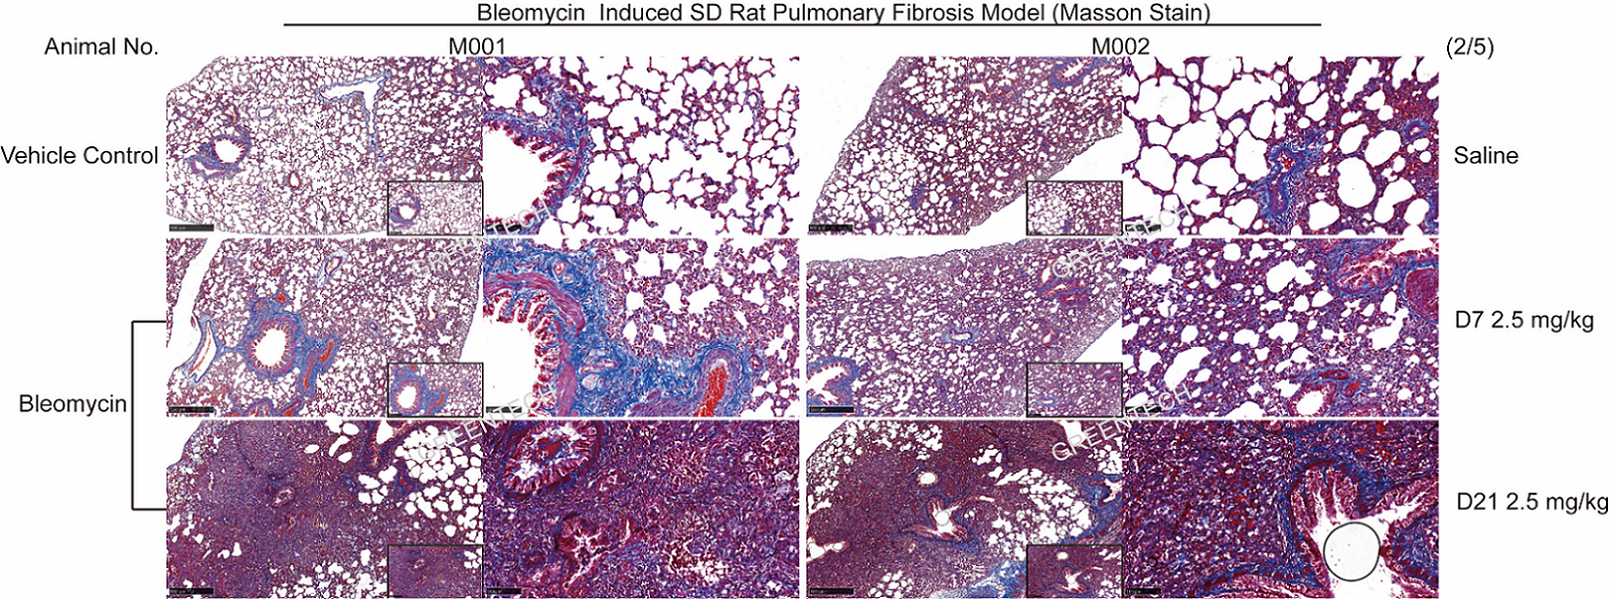 博来霉素诱导的大鼠IPF模型肺组织Masson染色